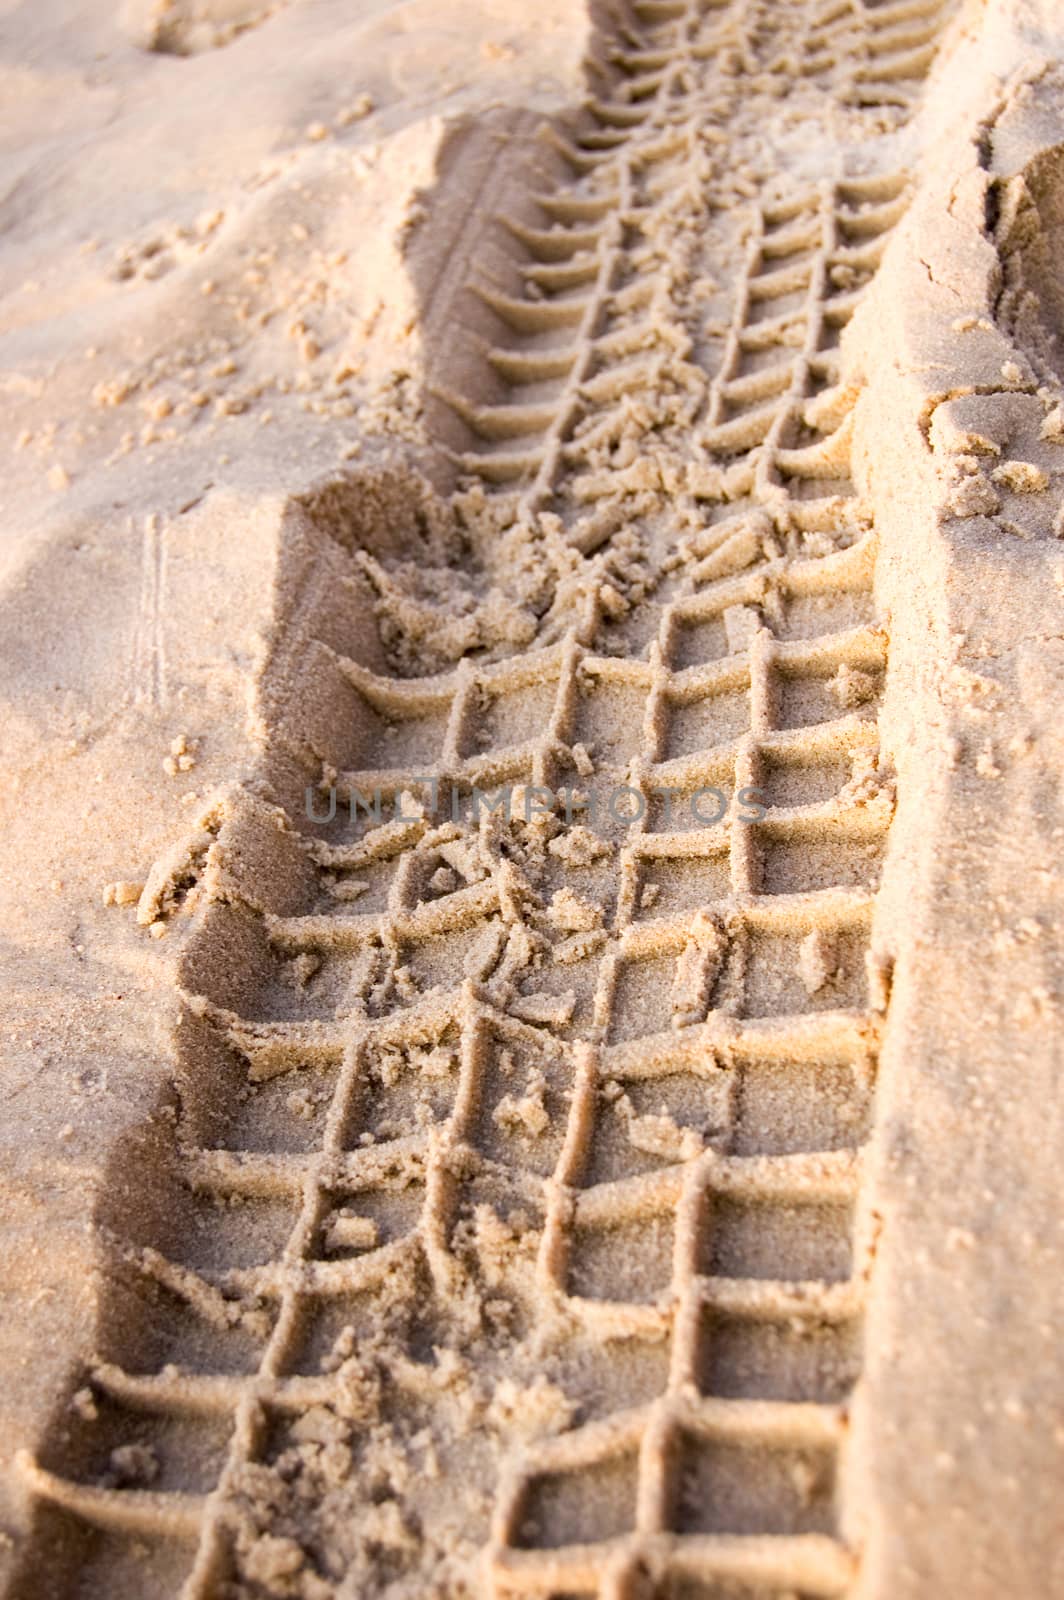 Ruts in sand on beach.